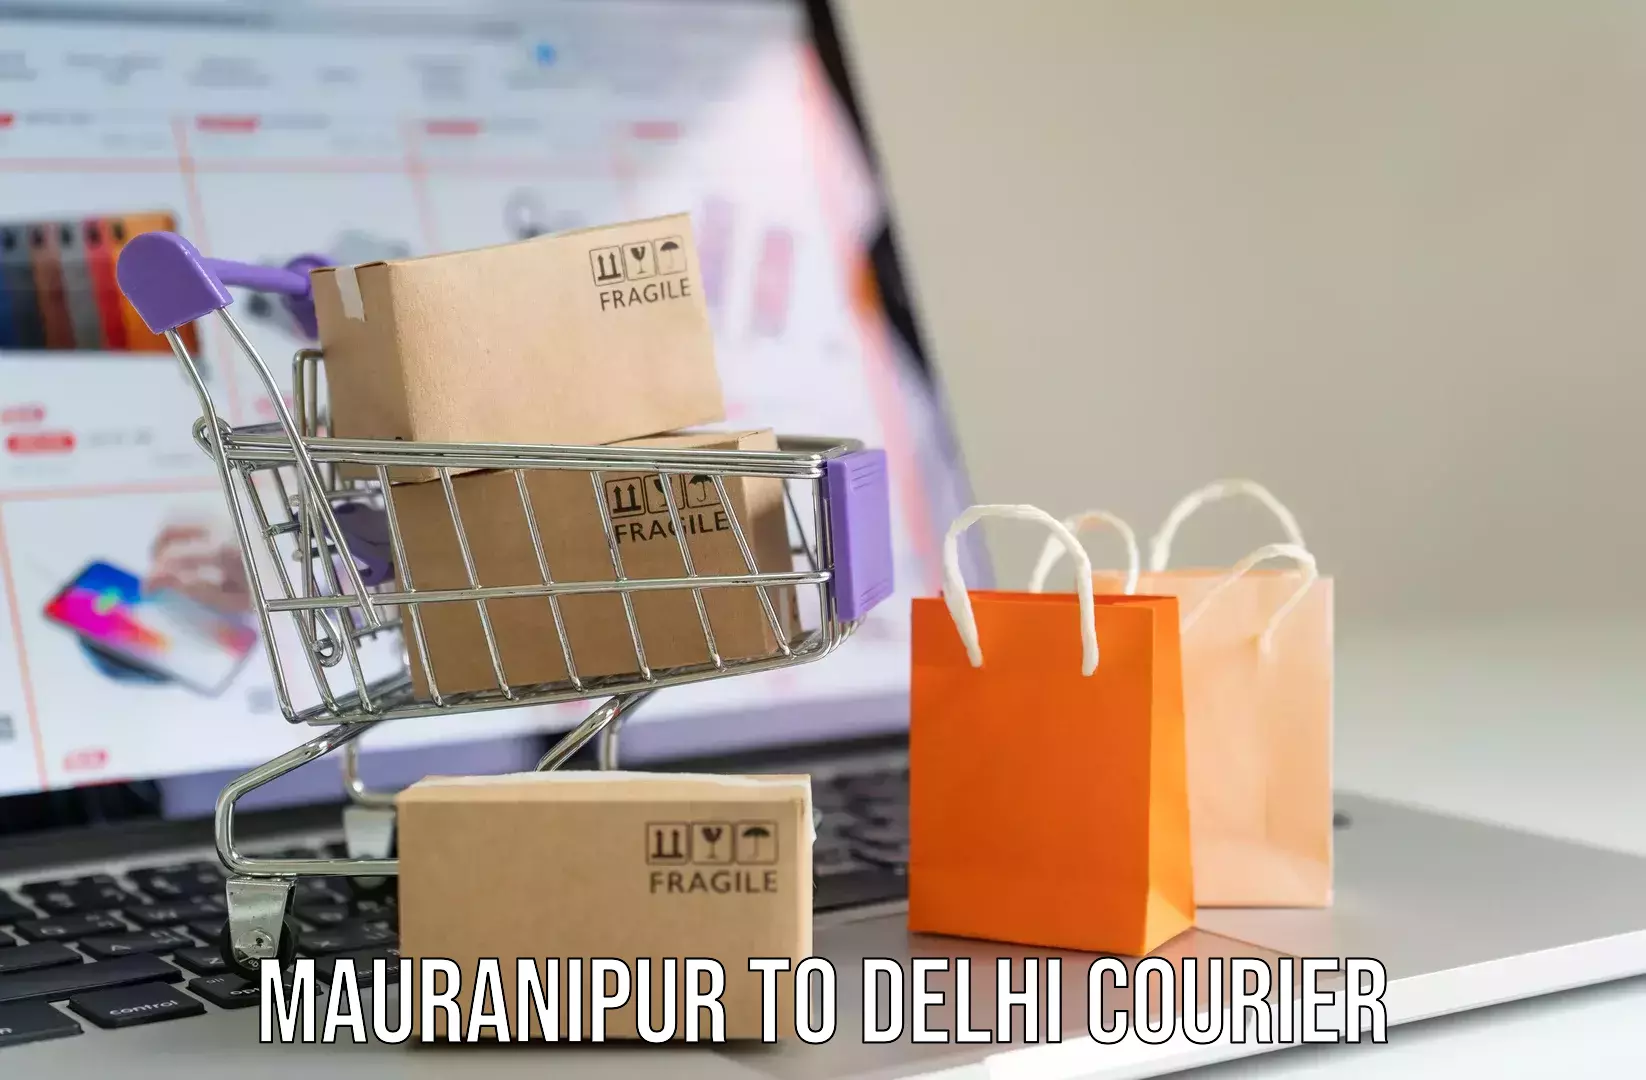 Door-to-door baggage service Mauranipur to University of Delhi